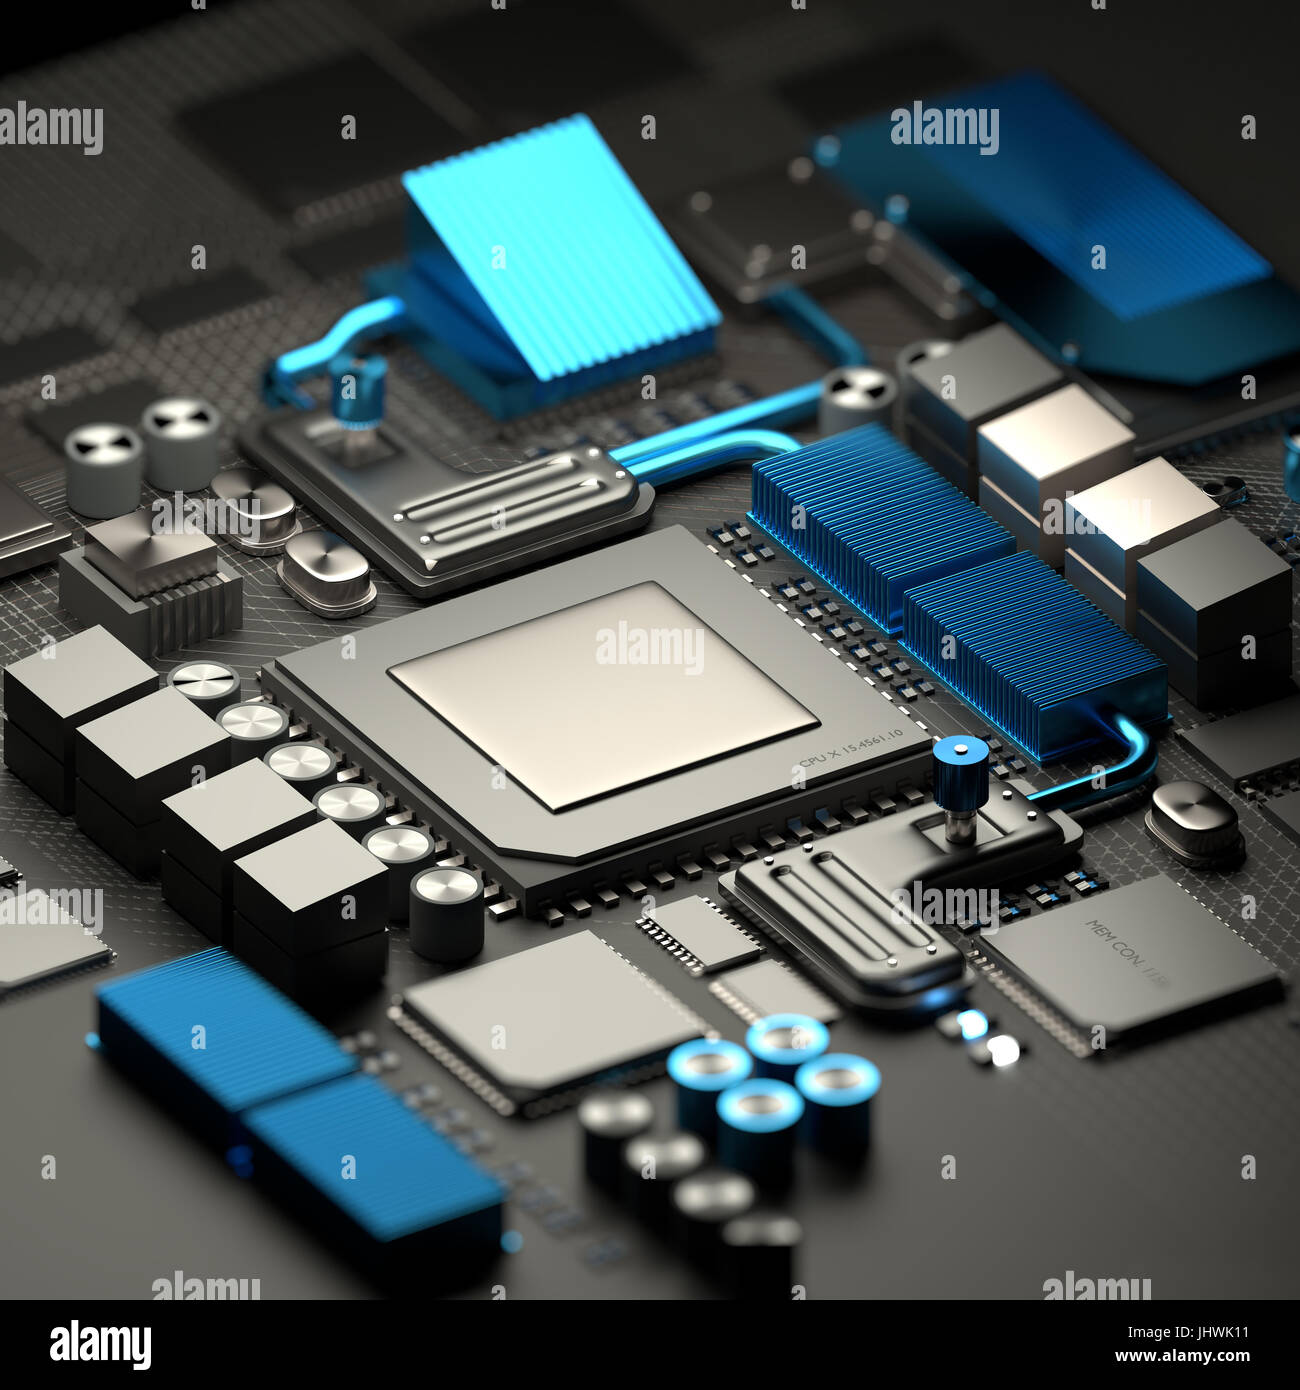 Modernen Innenleben von mobilen Geräten und Computern mit Mikroprozessor CPU und Motherboard mit RAM-Chips. Technik-Hintergrund. 3D illustration Stockfoto